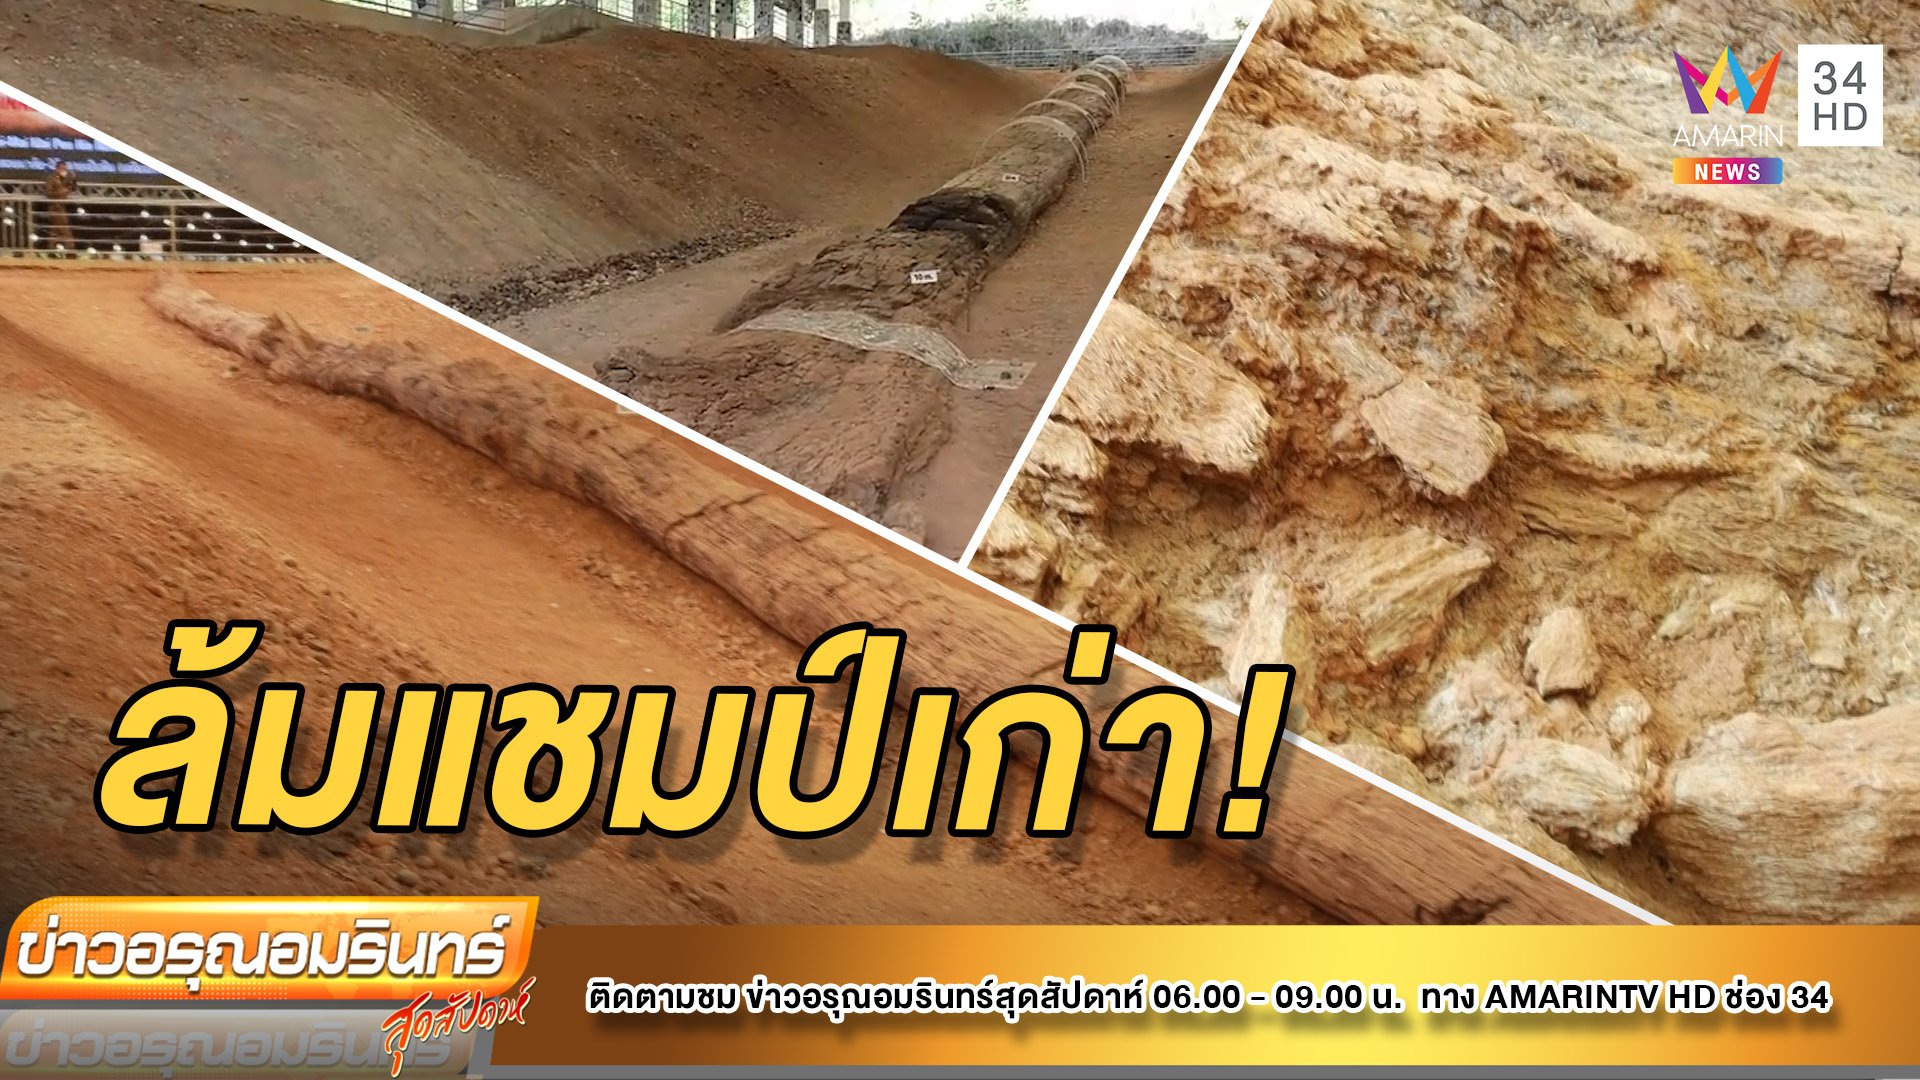 “กินเนสส์บุ๊ก” รับรองไทย “ไม้กลายเป็นหินยาวที่สุดในโลก” ล้มจีนแชมป์เก่ | ข่าวอรุณอมรินทร์ | 9 ก.ค. 65 | AMARIN TVHD34